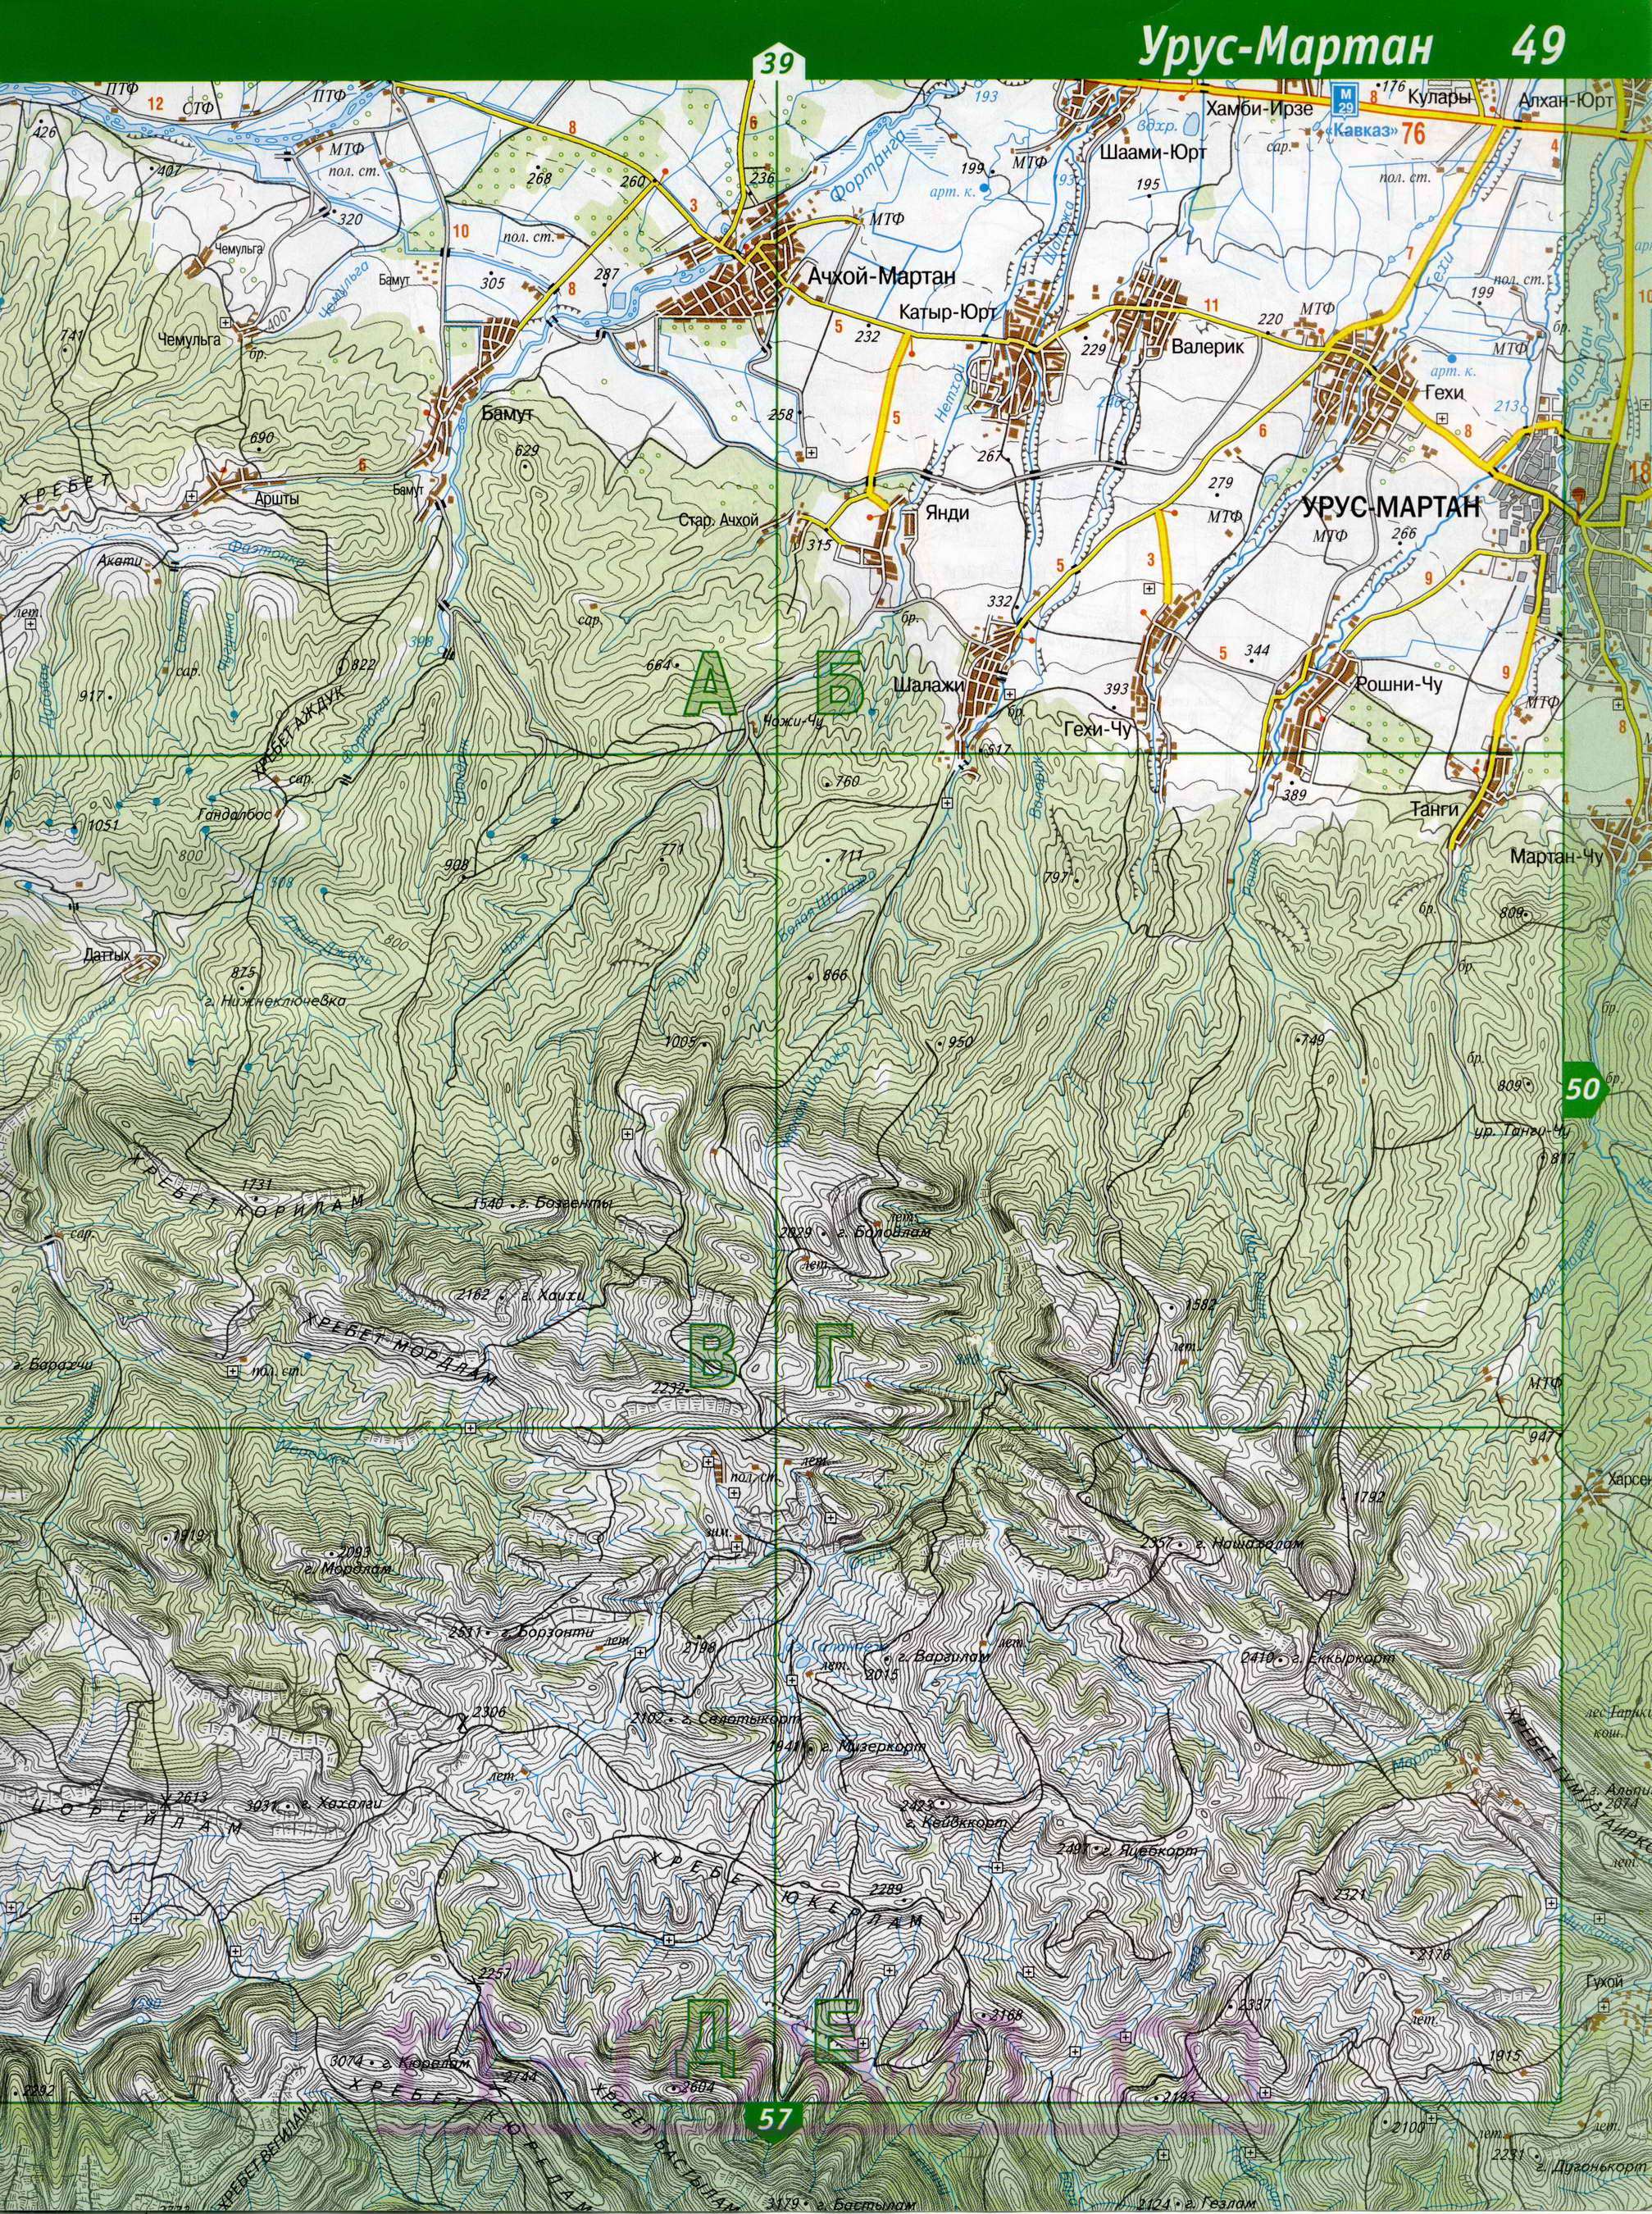 Карта Ингушетии. Подробная топографическая карта Ингушетии. Карта Ингушетии масштаба 1см:2км, B1 - 